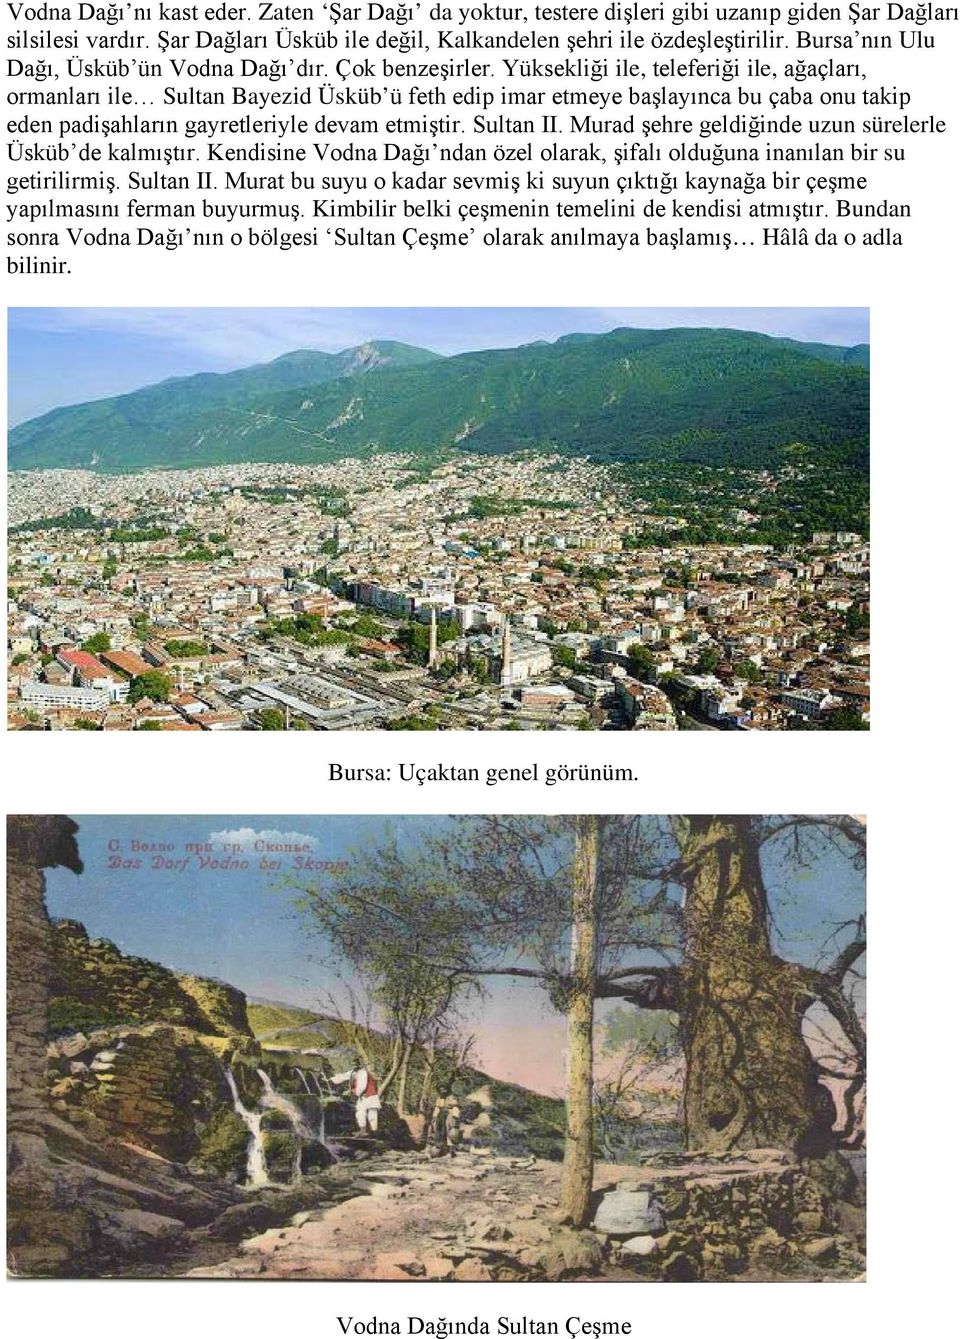 Yüksekliği ile, teleferiği ile, ağaçları, ormanları ile Sultan Bayezid Üsküb ü feth edip imar etmeye başlayınca bu çaba onu takip eden padişahların gayretleriyle devam etmiştir. Sultan II.